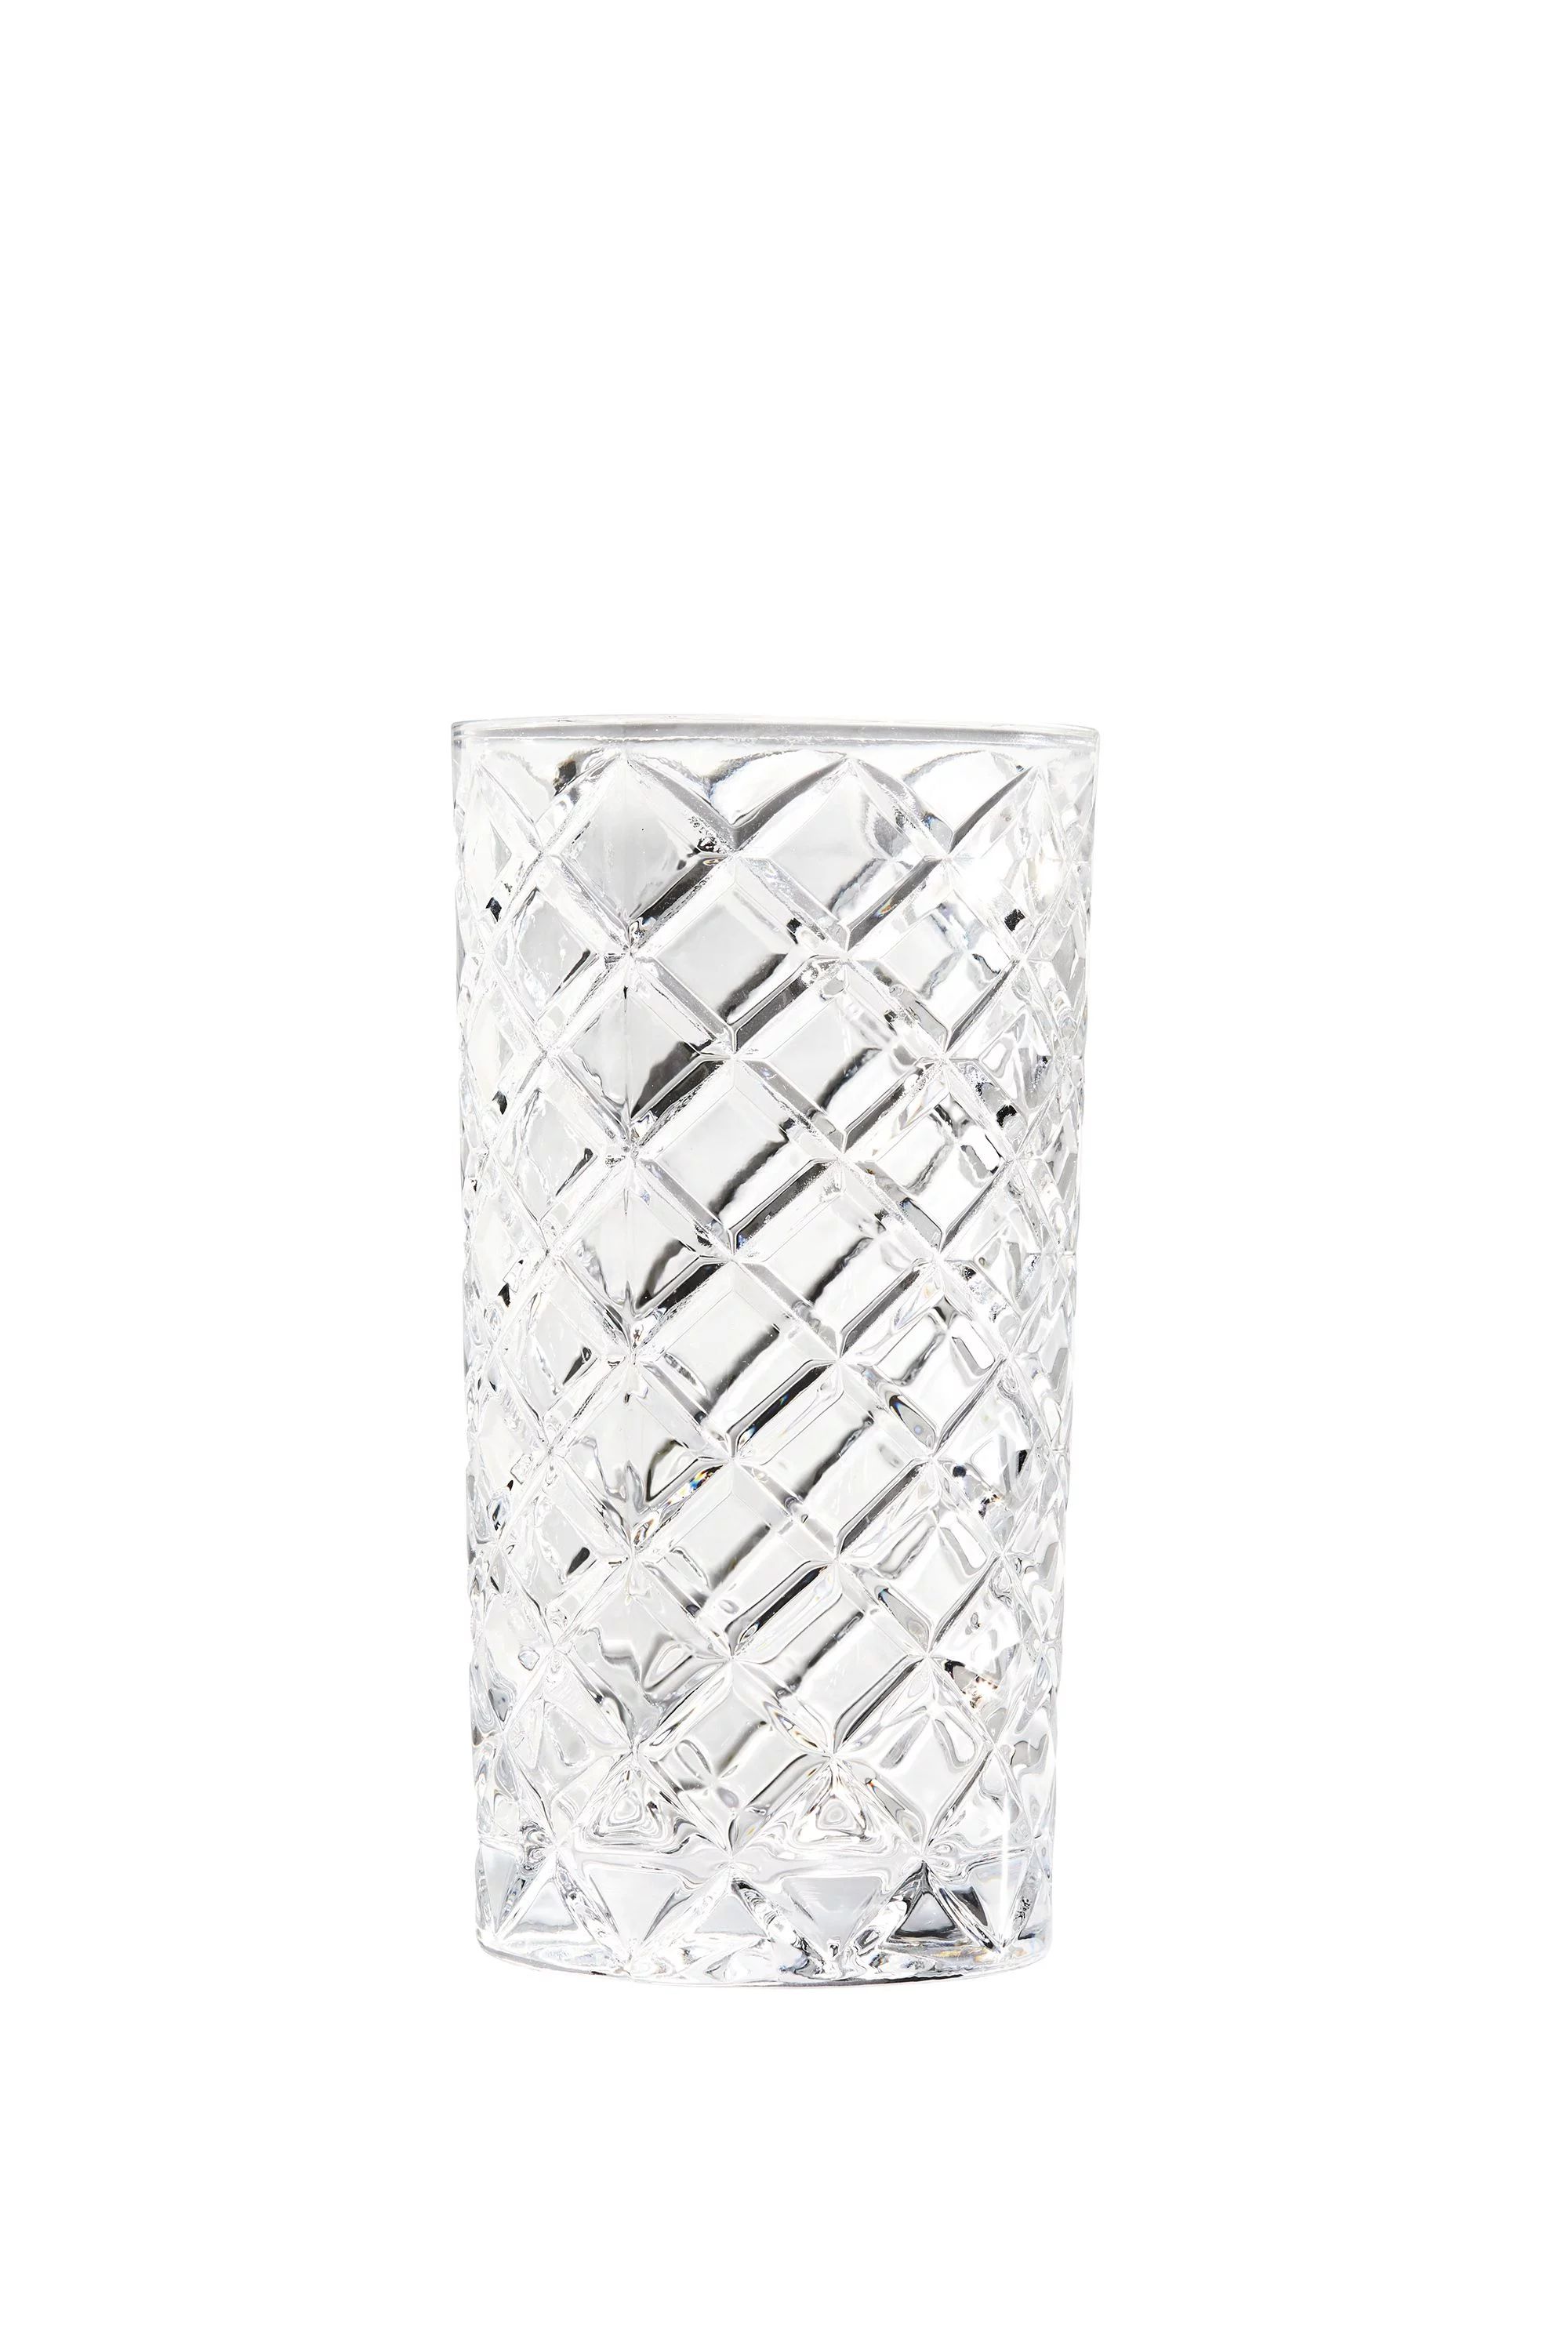 Better Homes & Gardens Diamond Cut Tumbler Drinking Glass, 8 Pack - Walmart.com | Walmart (US)